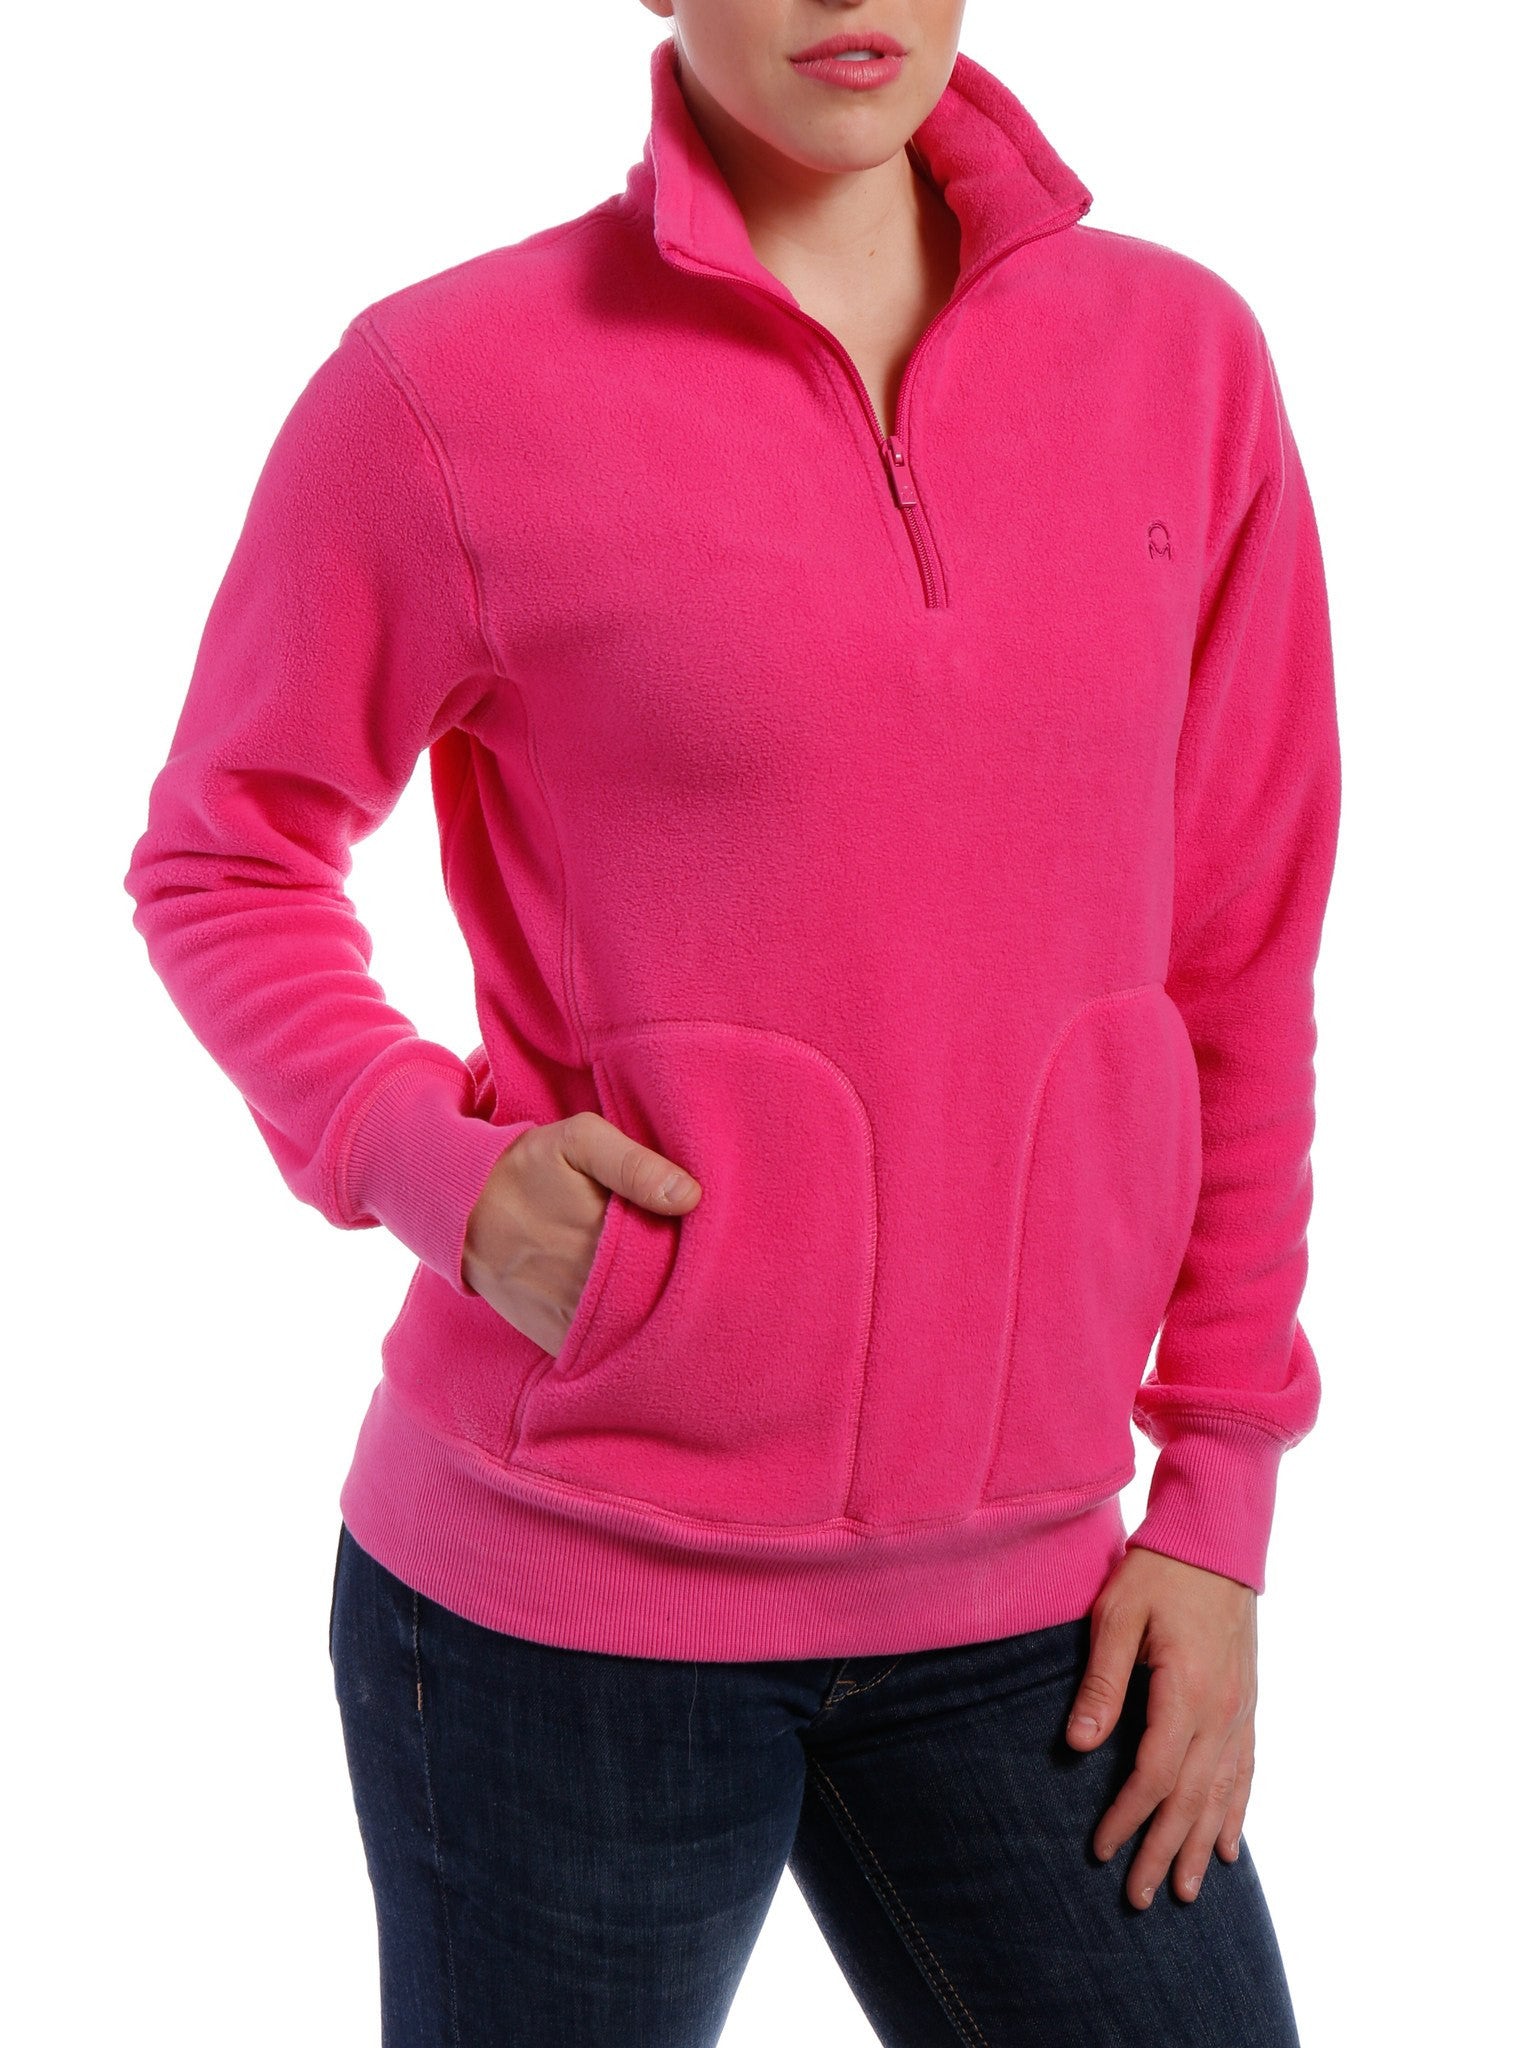 Women's Soft Fleece Half-Zip Pullover